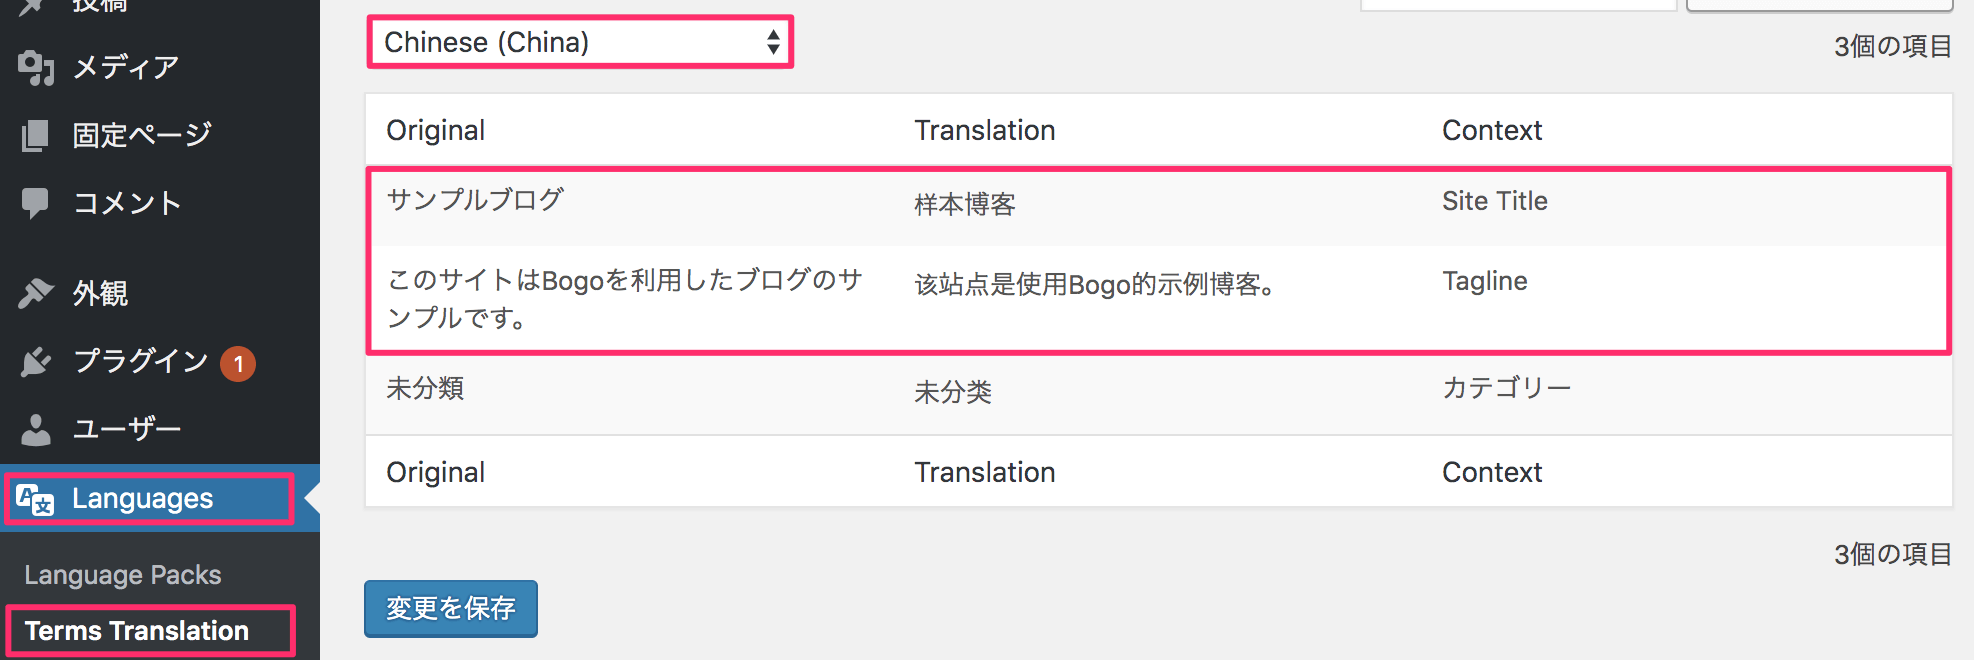 Languages（言語） > Terms Translation（テキストの翻訳）